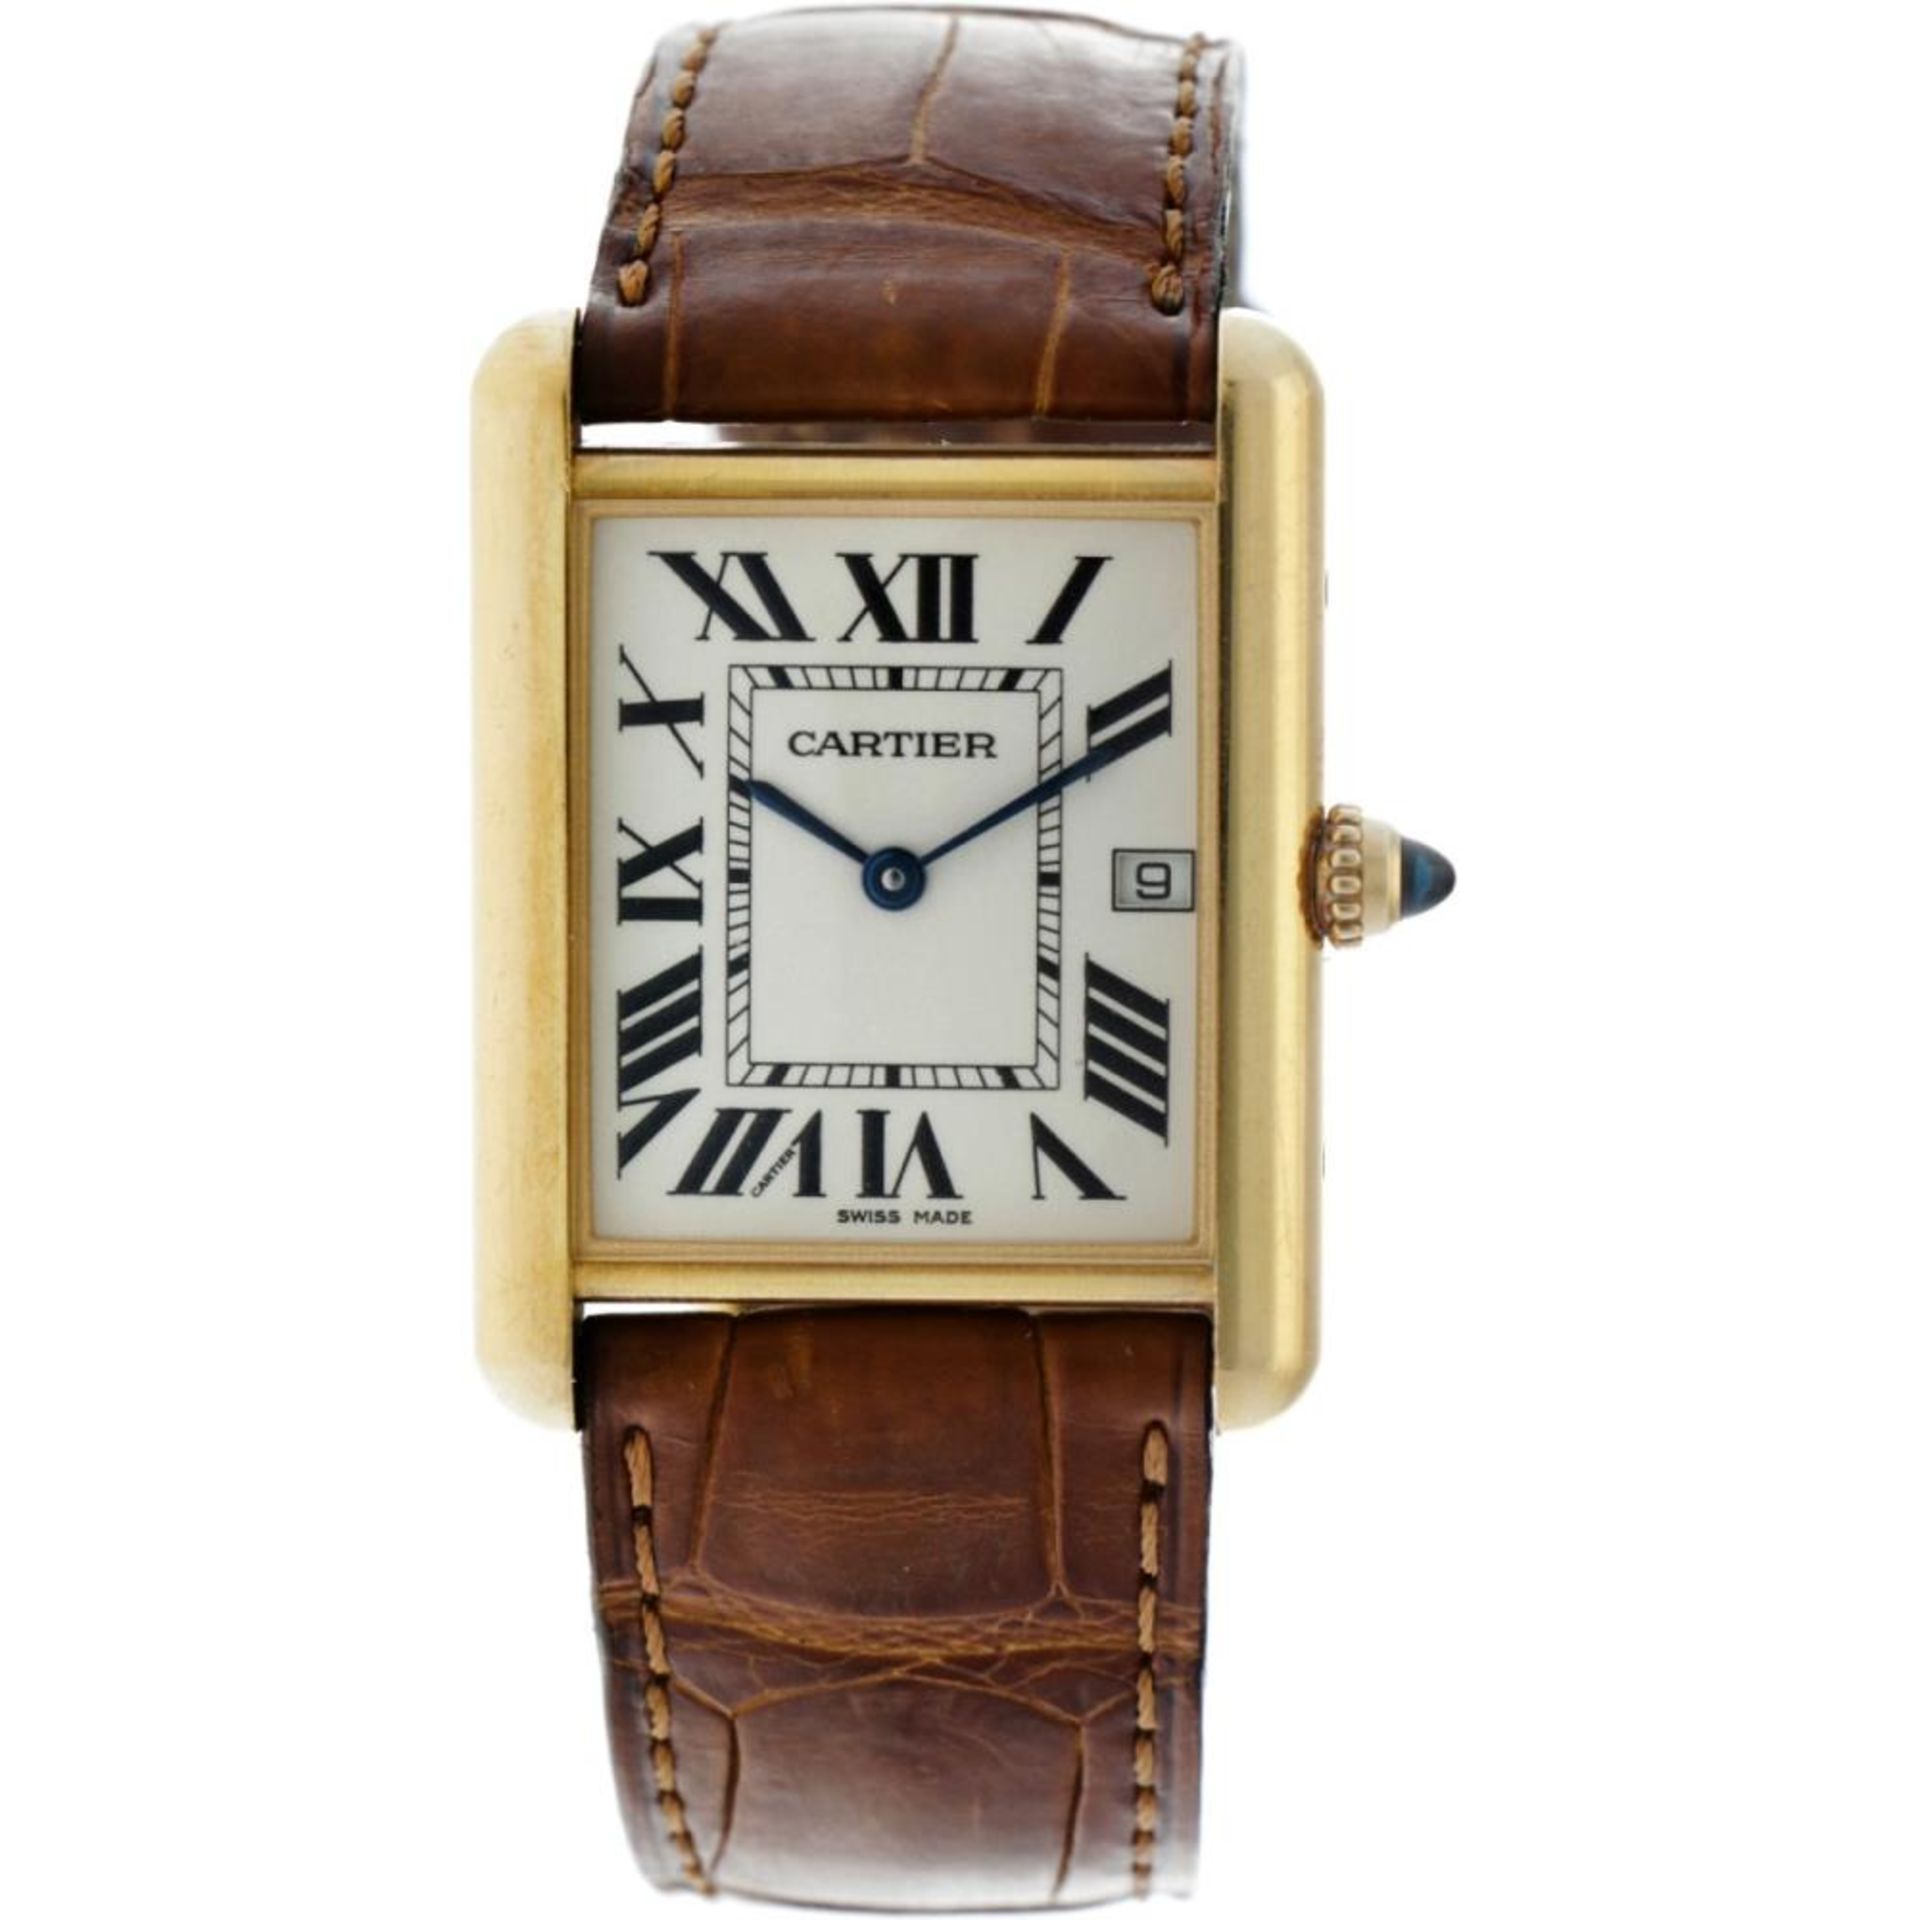 Cartier Tank Louis 2441 - 18 carat gold - Men's watch - approx. 2005.